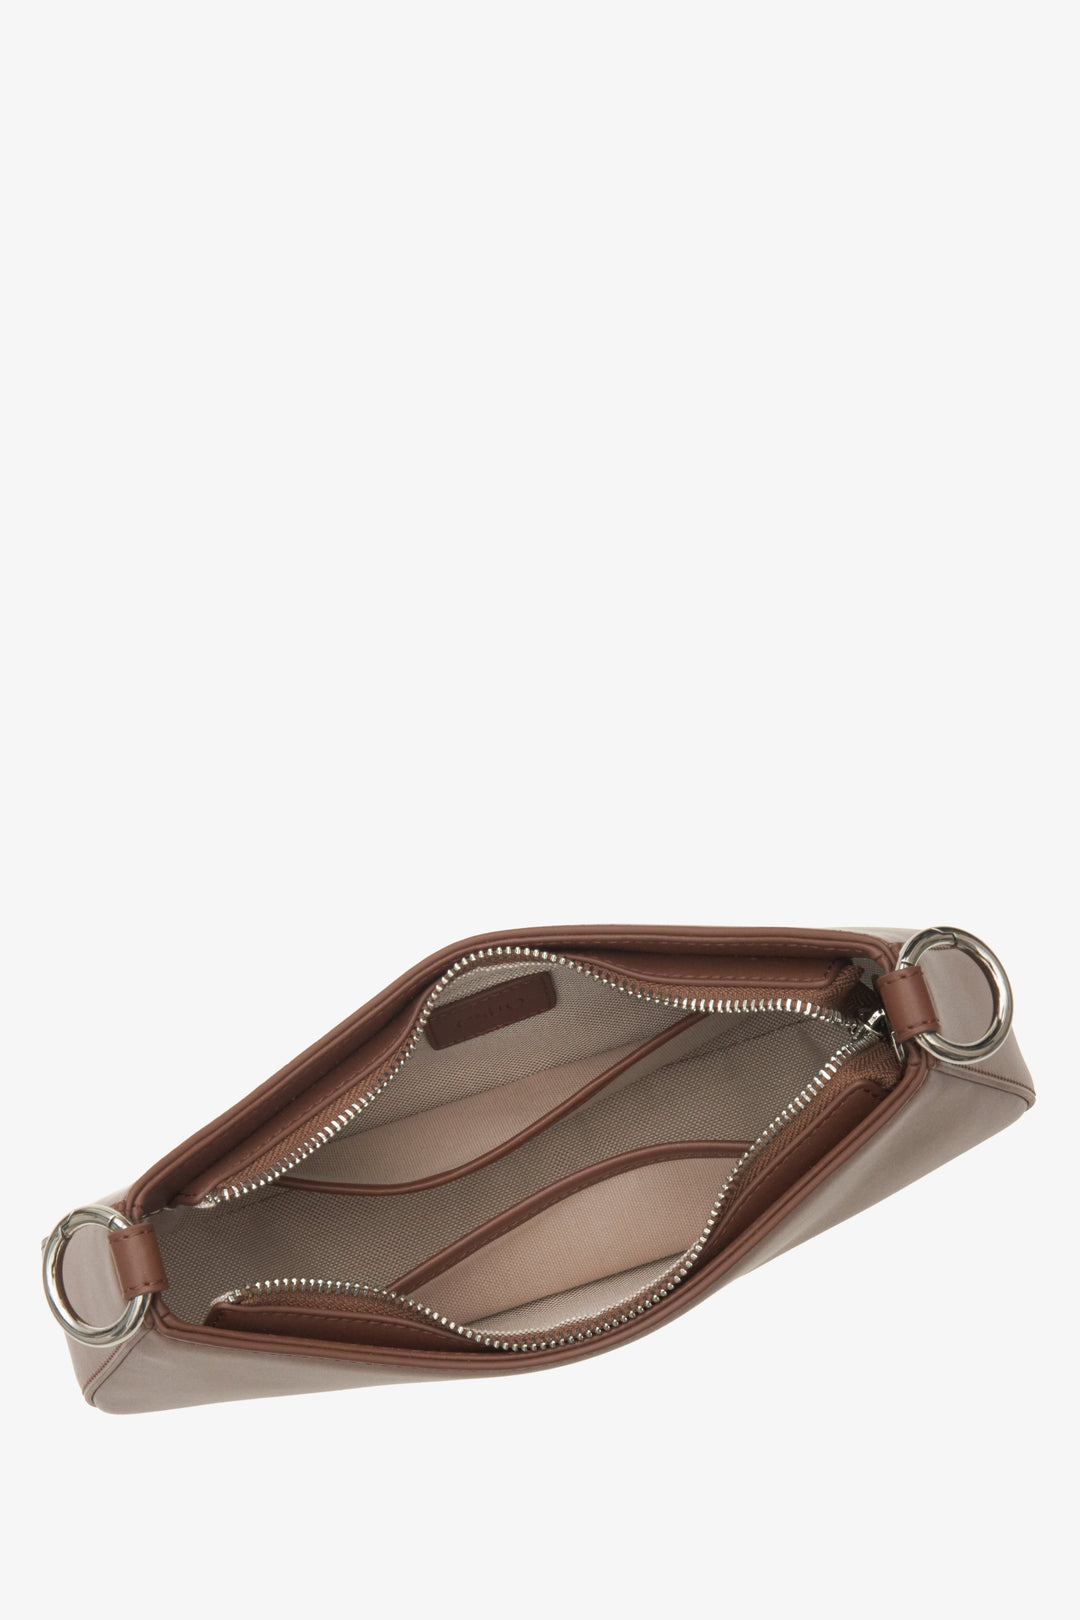 Skórzana torebka-bagietka w kolorze brązowym marki Estro - zbliżenie na wnętrze modelu.